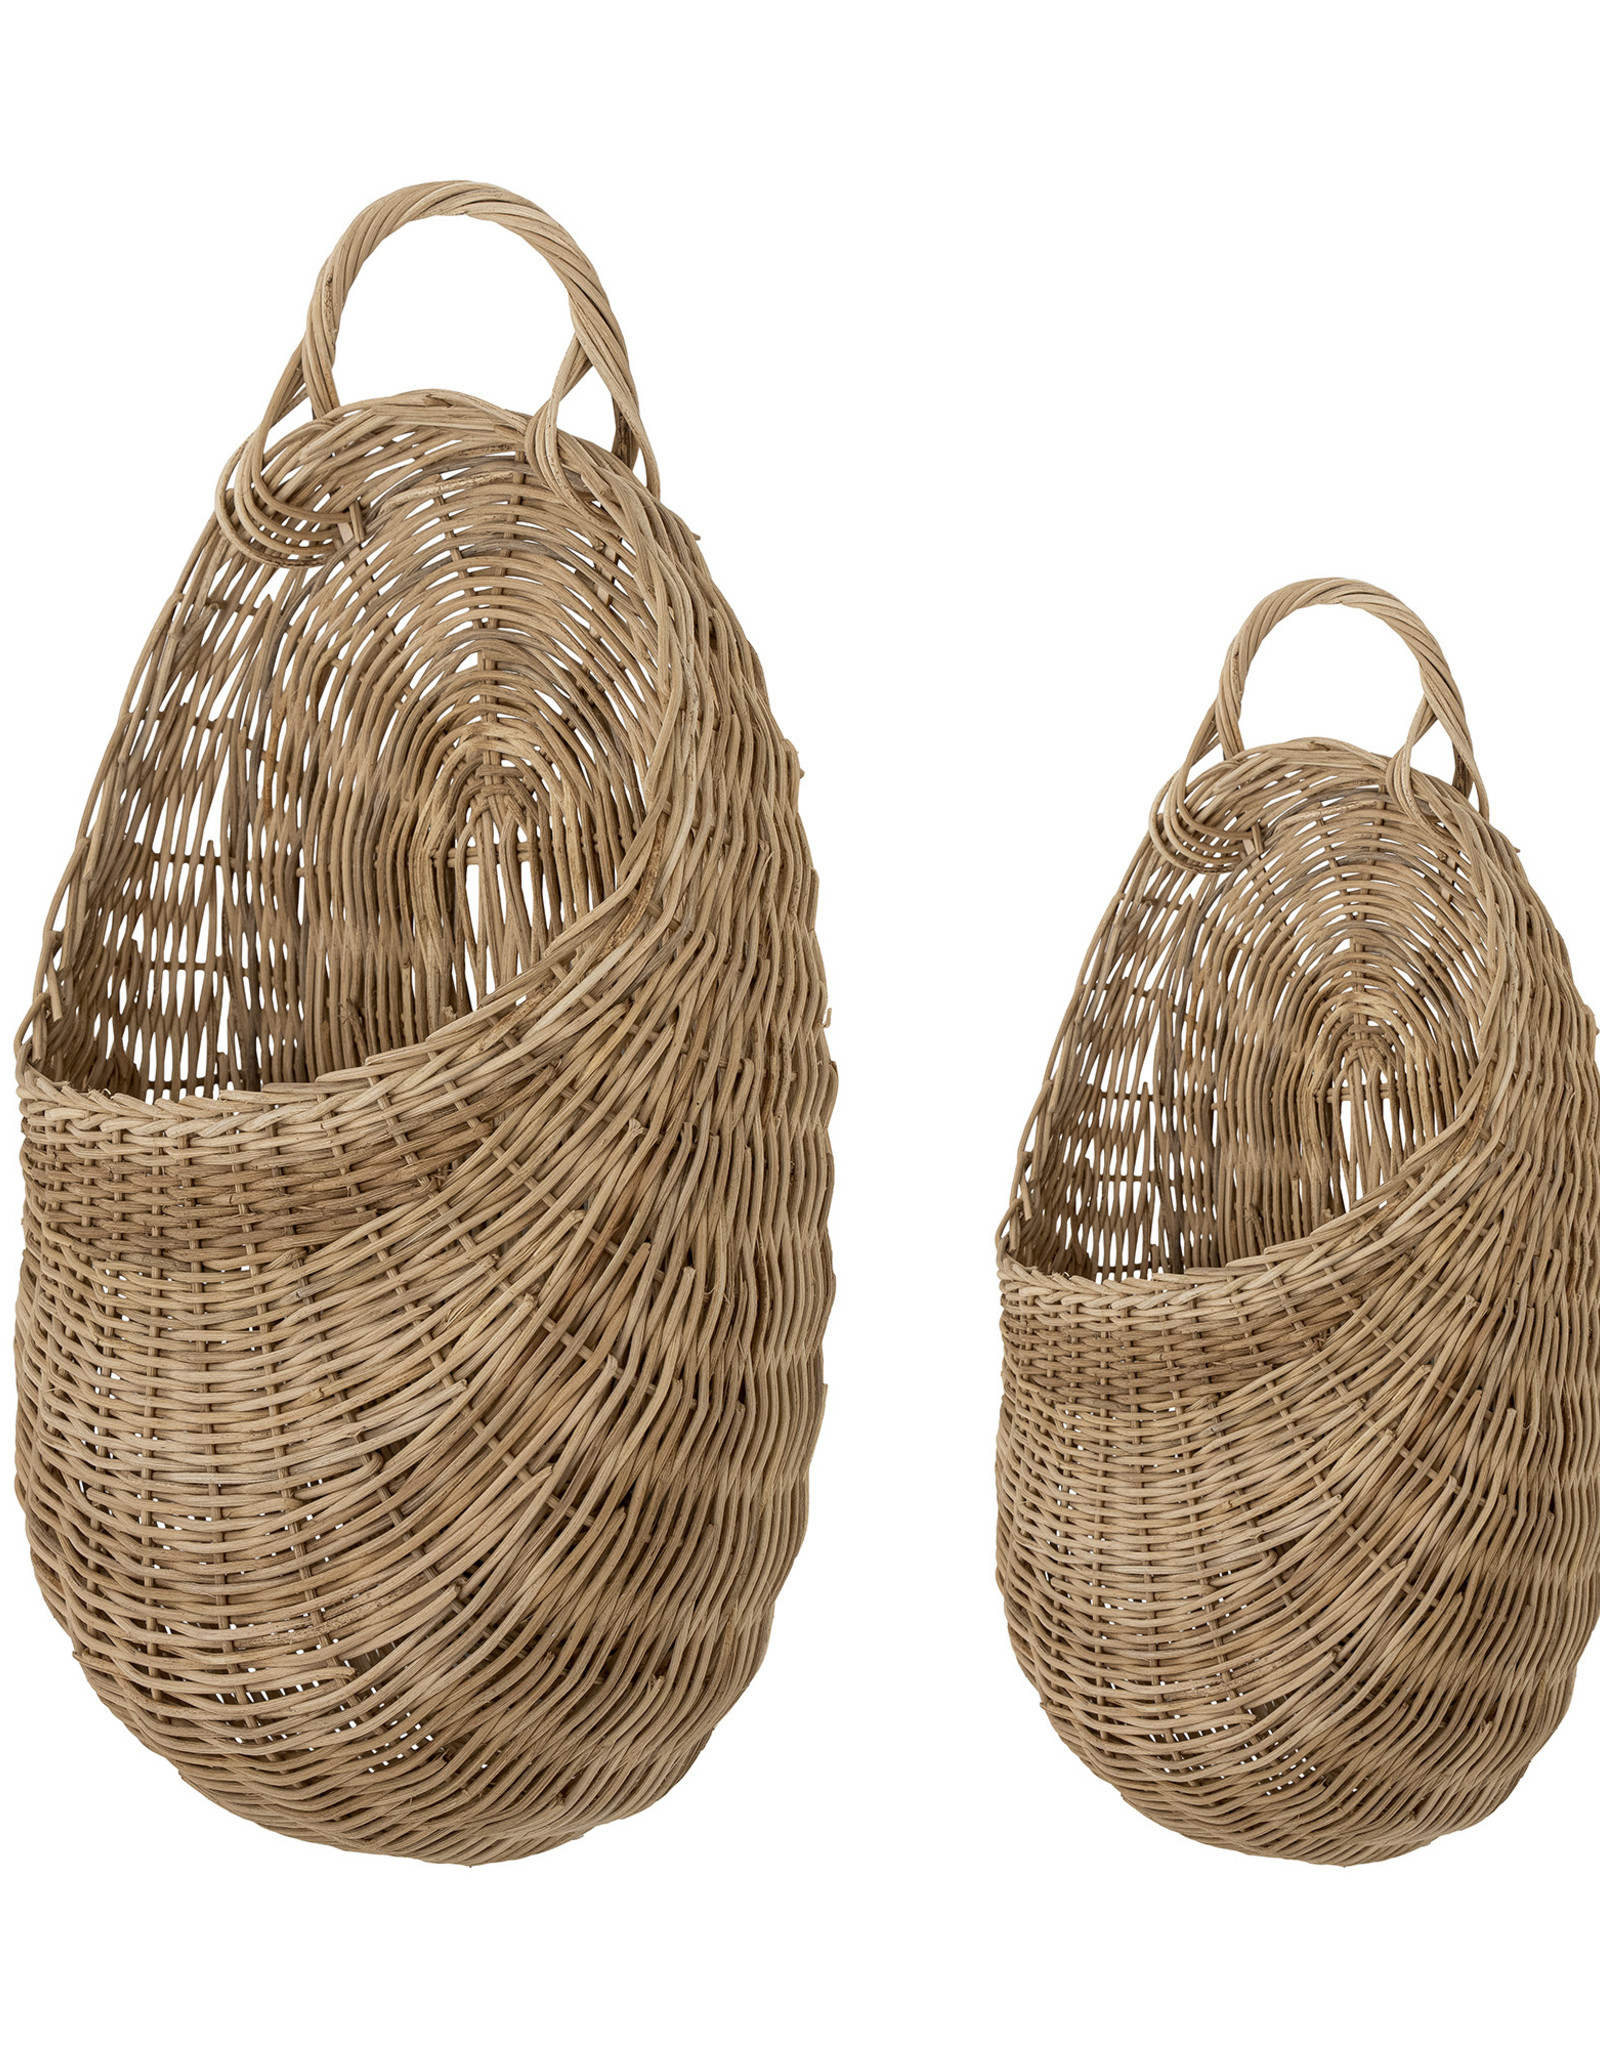 Bloomingville basket 'Chloe' - willow